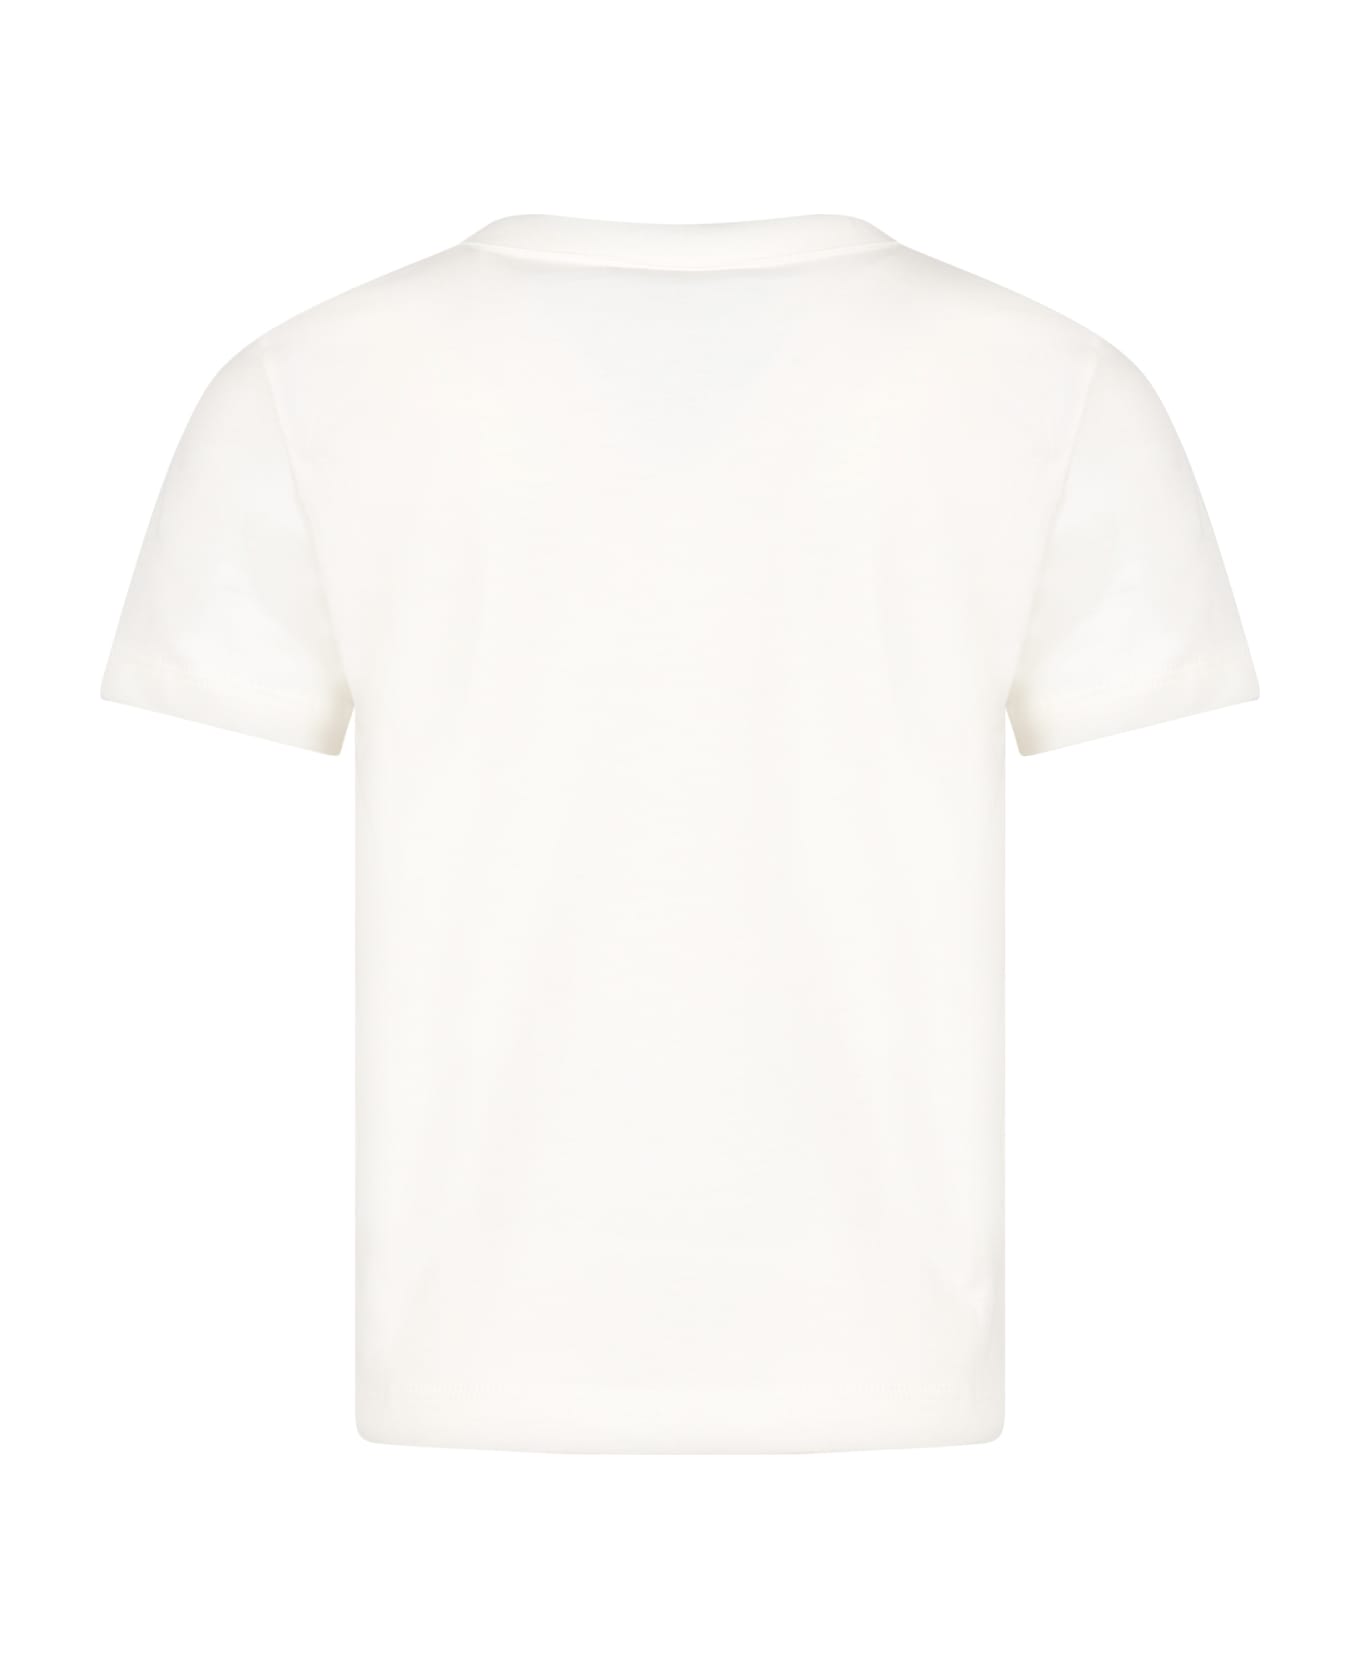 Petit Bateau Ivory T-shirt For Boy With Logo - Ivory